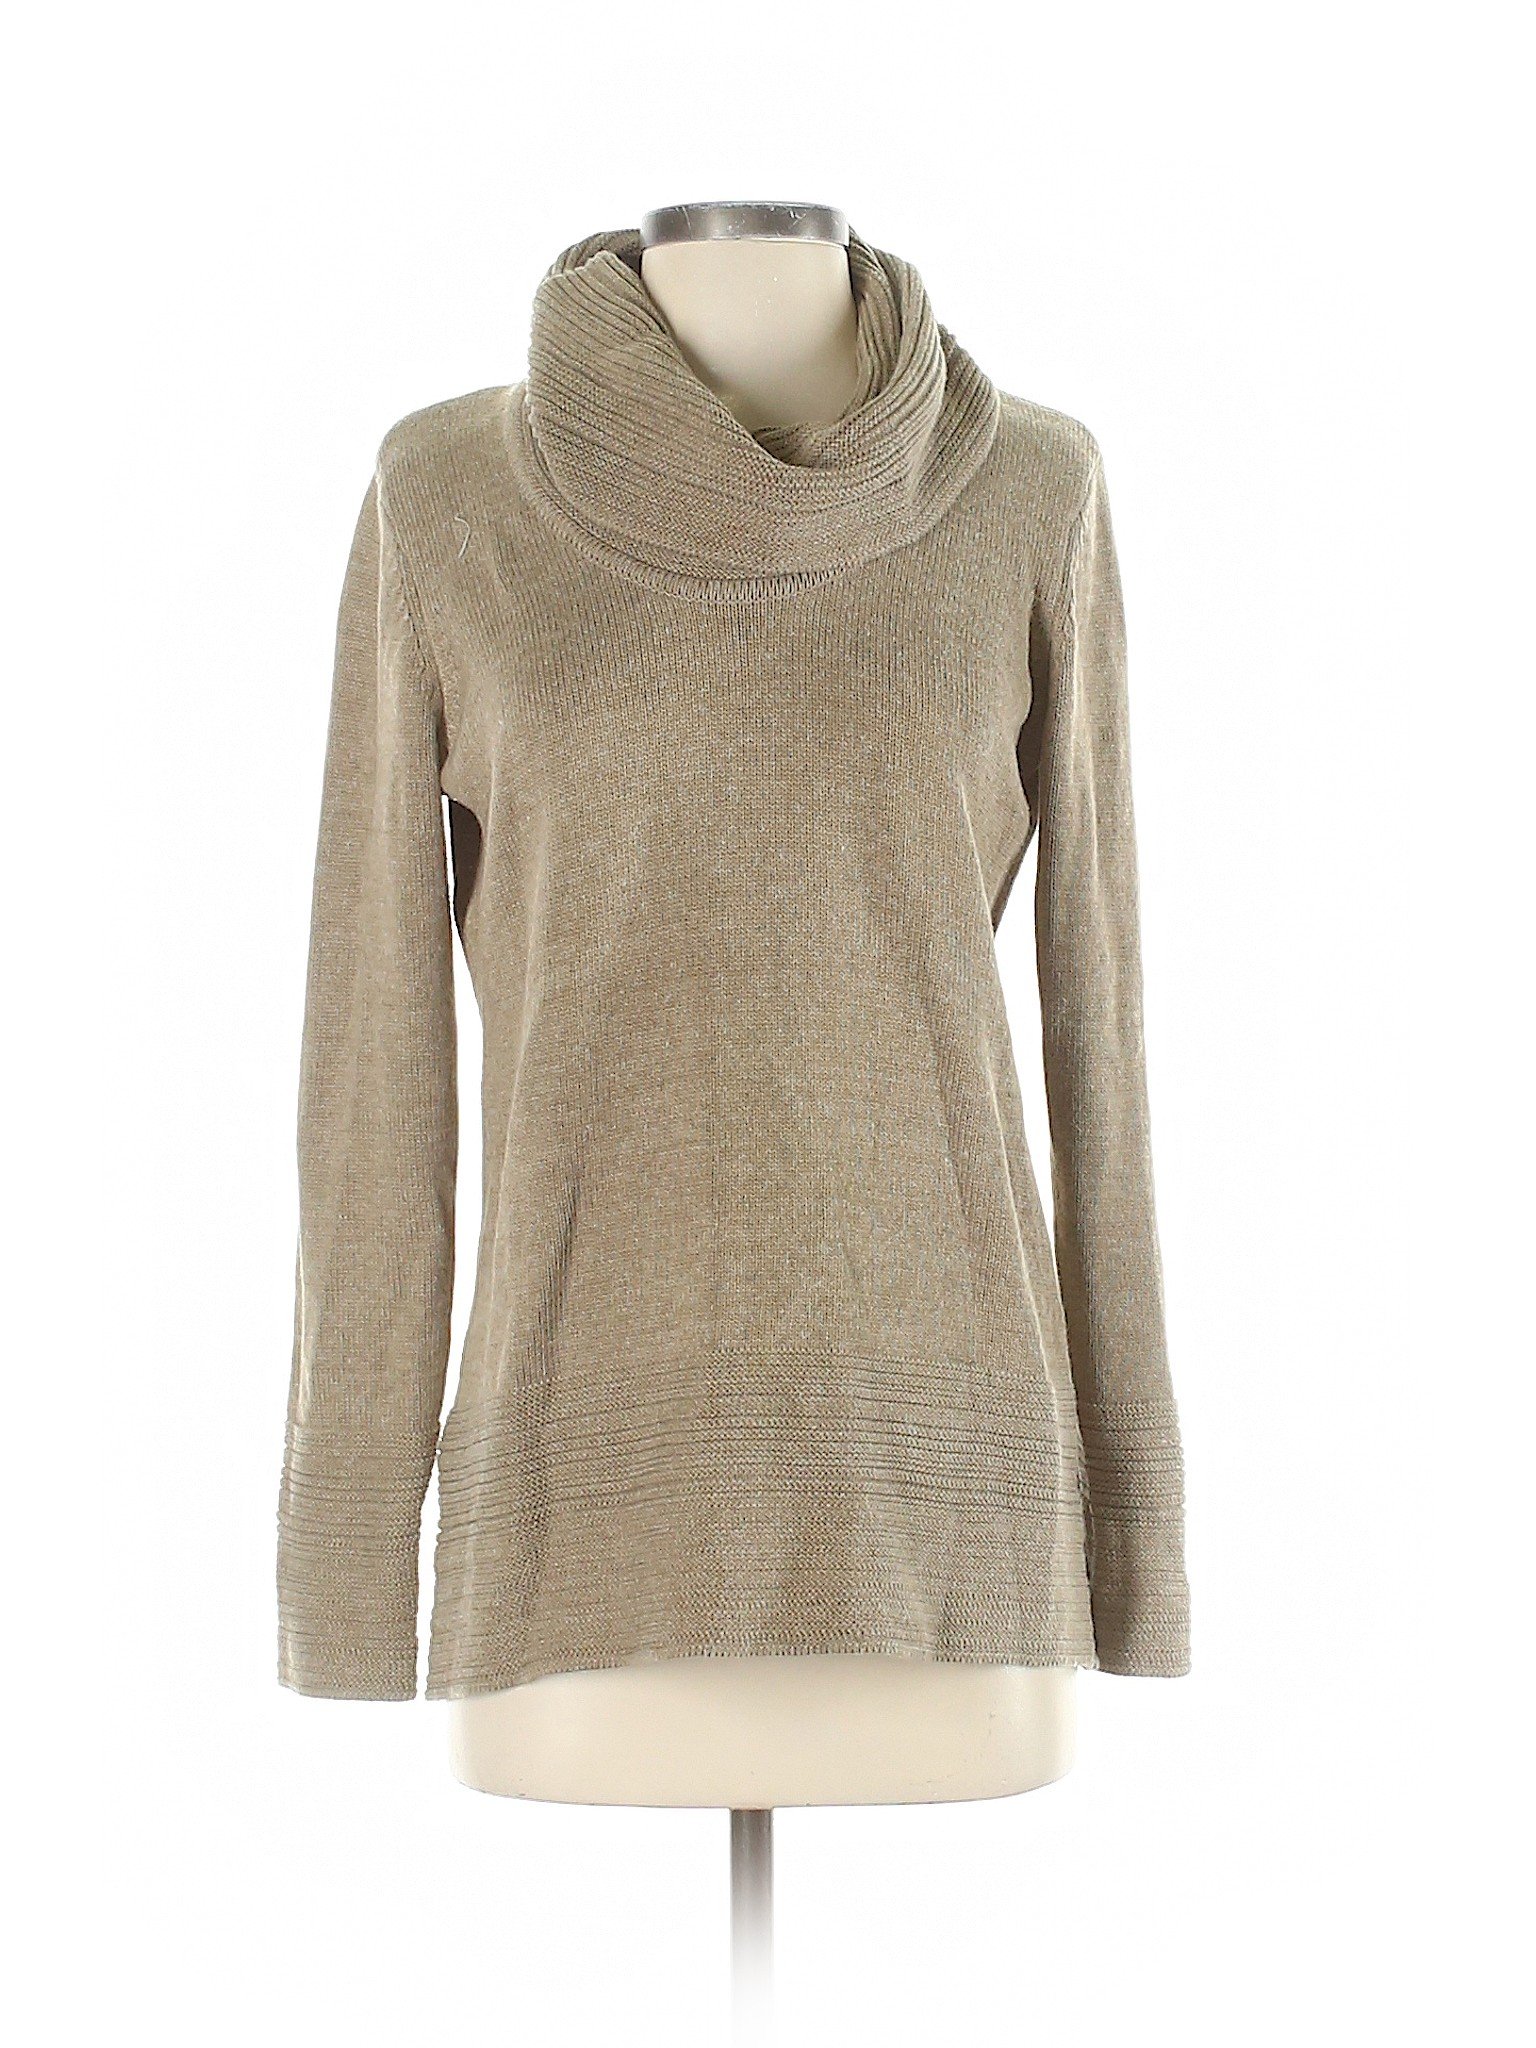 Calvin Klein Women Brown Pullover Sweater S | eBay